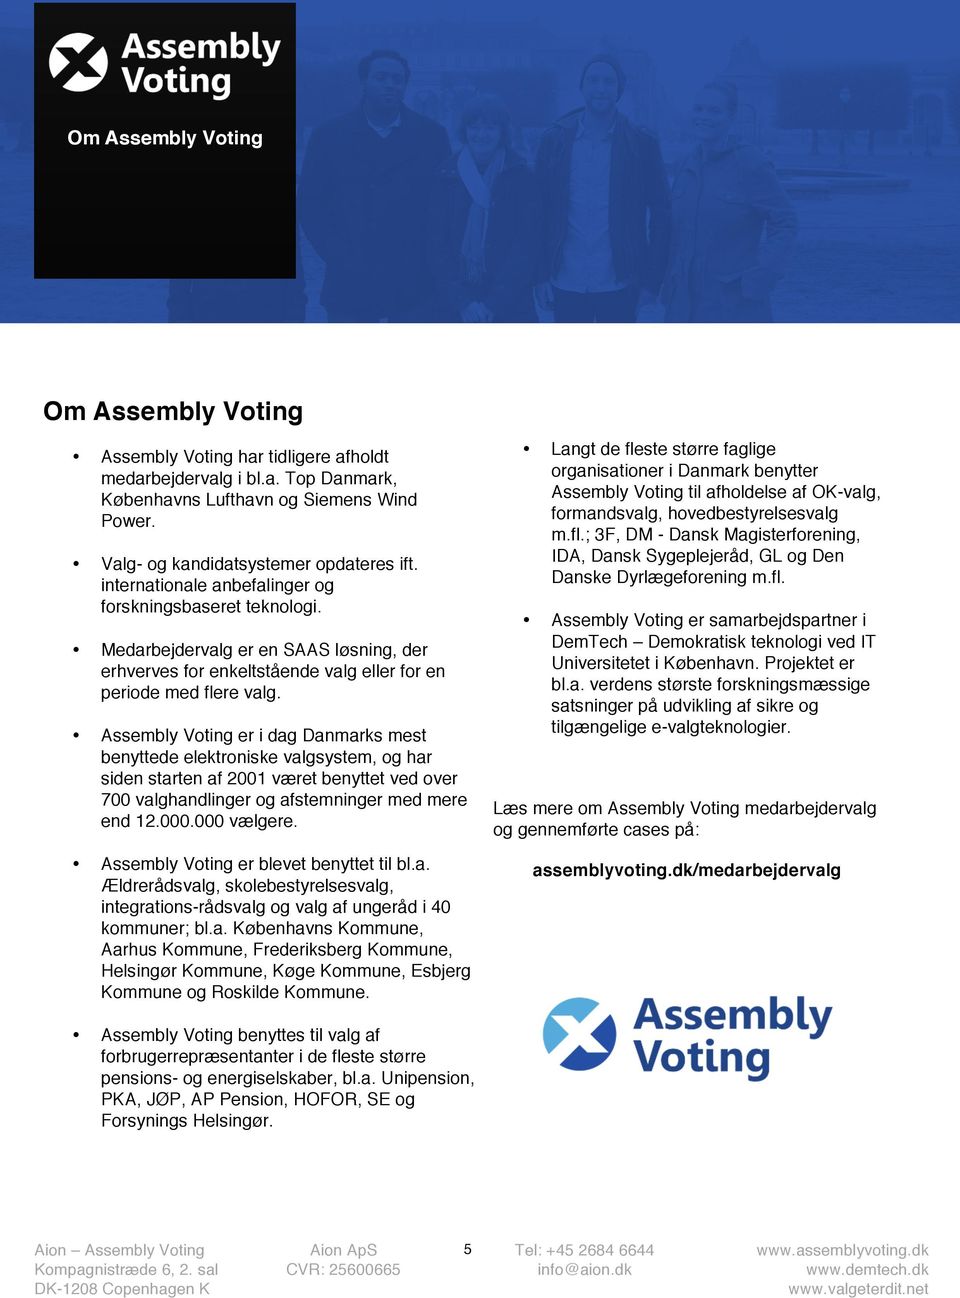 Assembly Voting er i dag Danmarks mest benyttede elektroniske valgsystem, og har siden starten af 2001 været benyttet ved over 700 valghandlinger og afstemninger med mere end 12.000.000 vælgere.